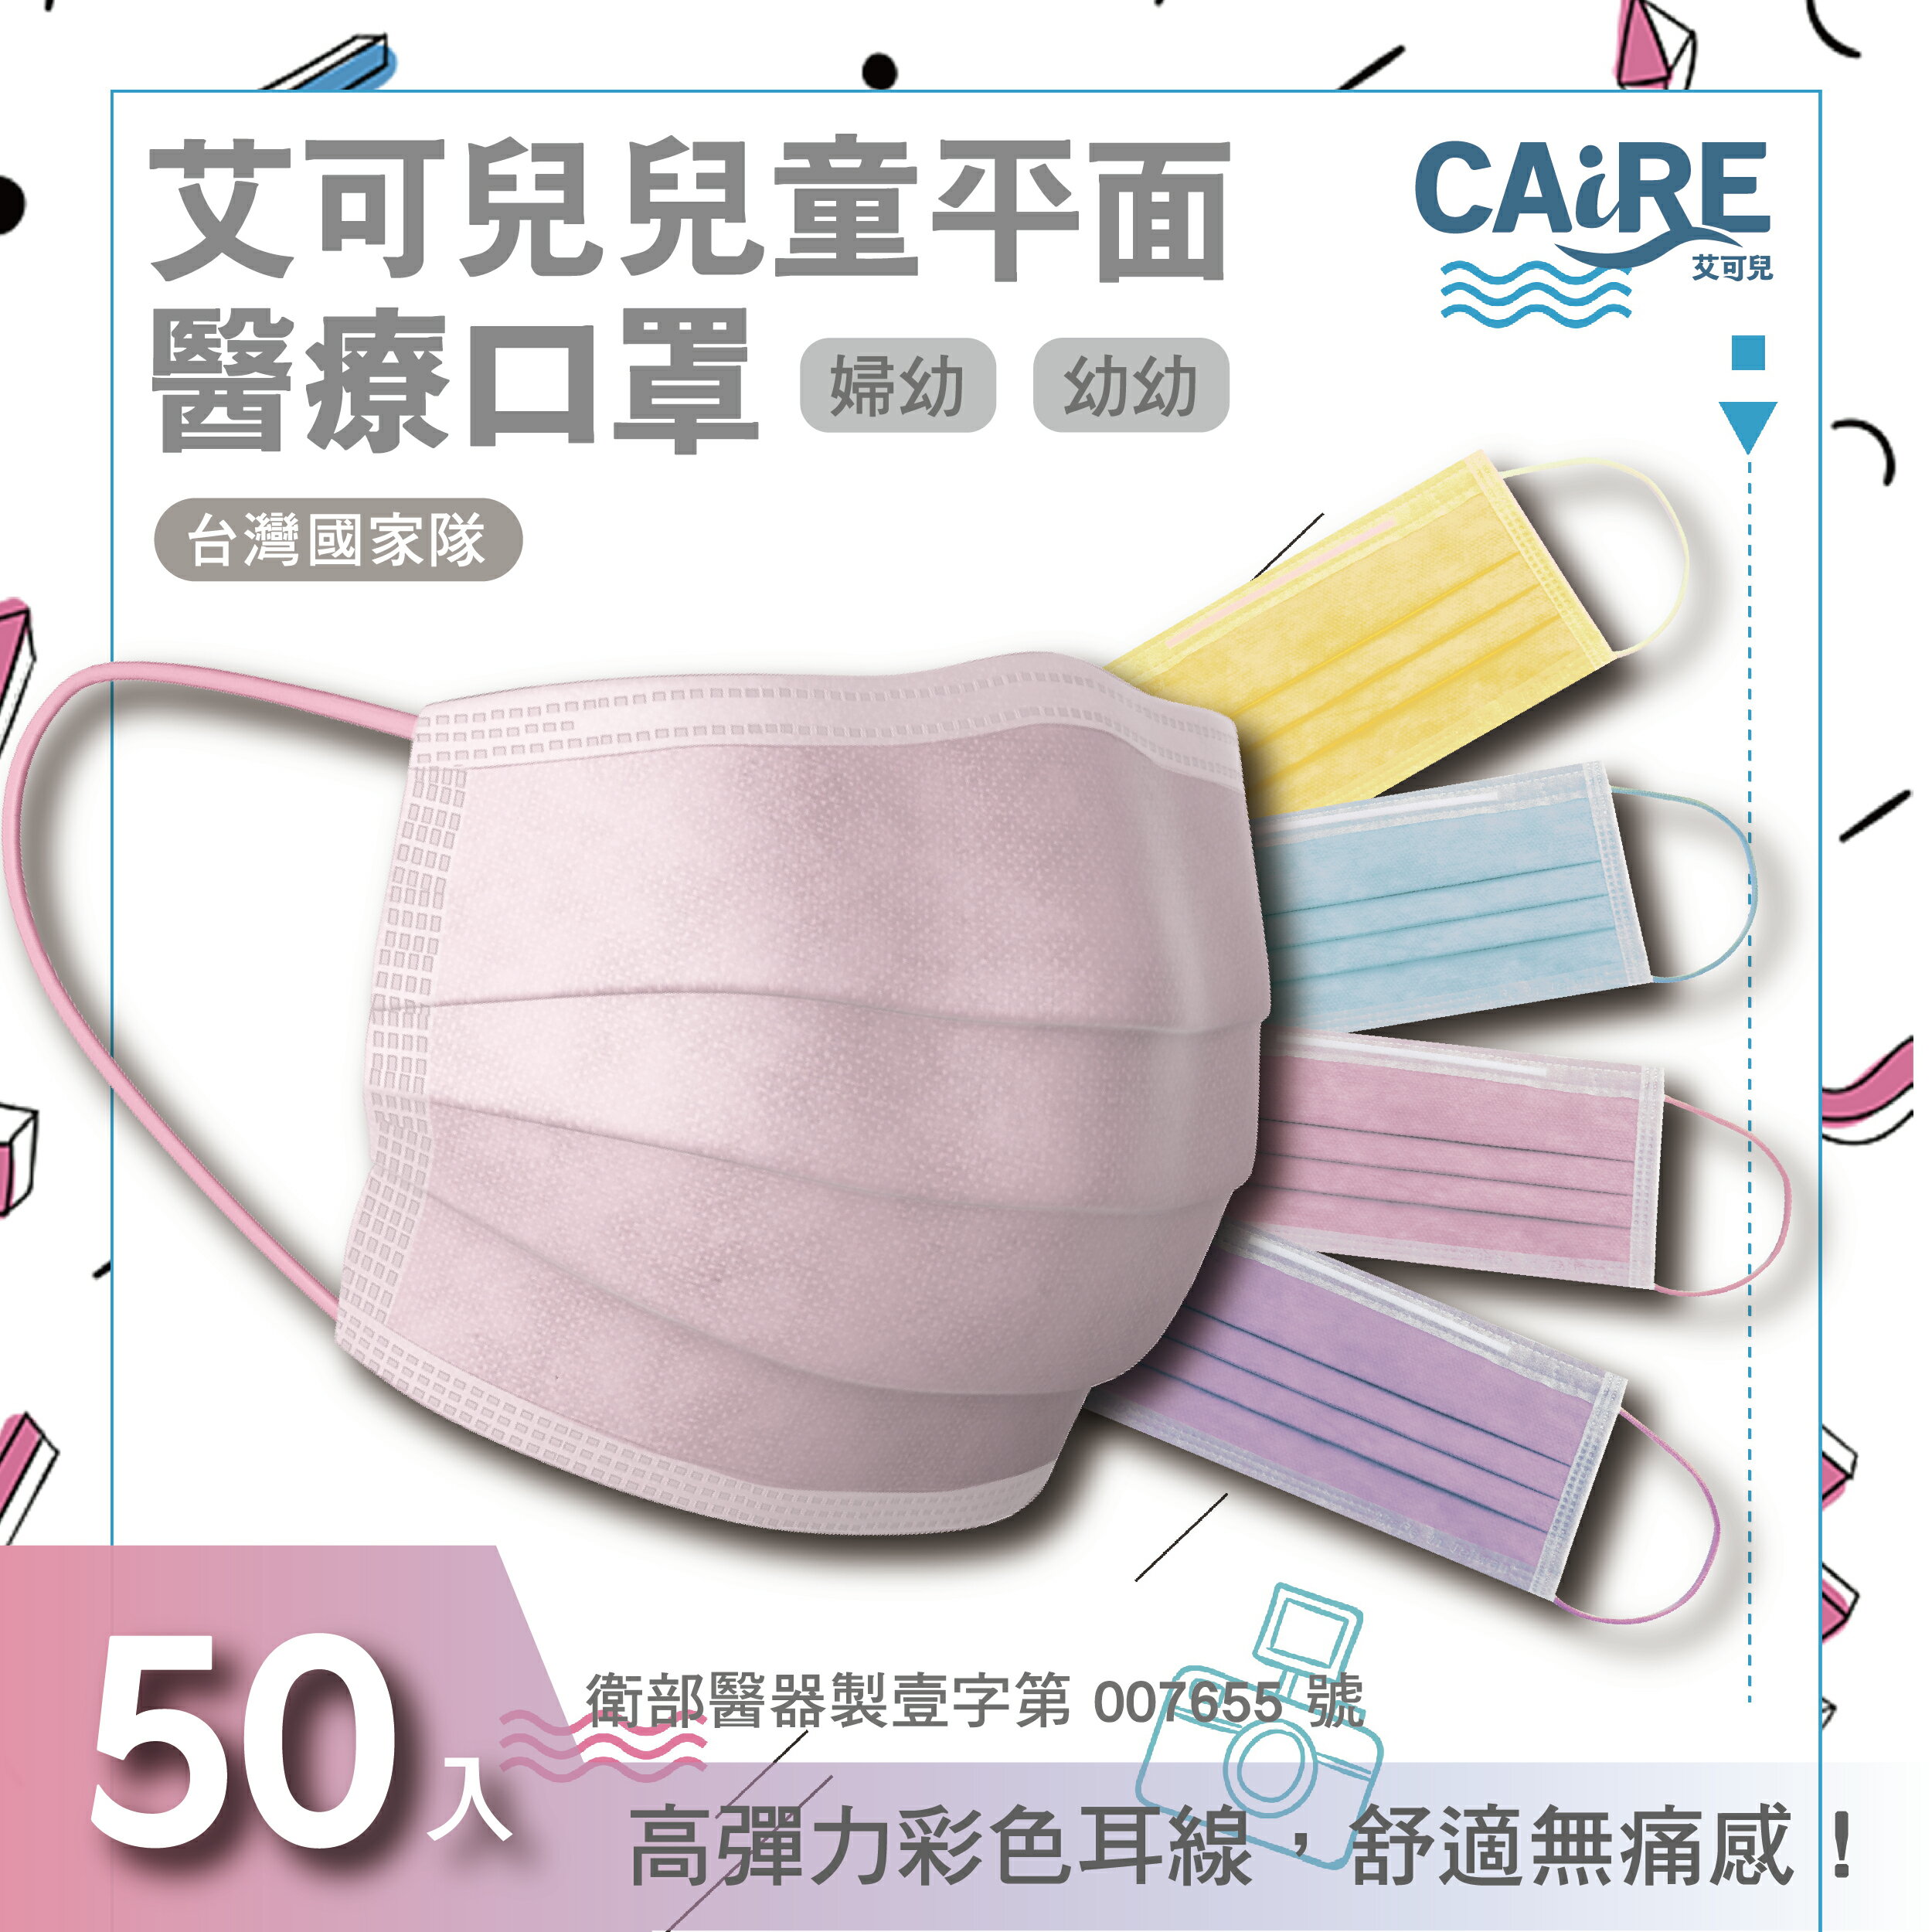 【CAiRE艾可兒】婦幼/幼幼醫用平面口罩(50入/盒)